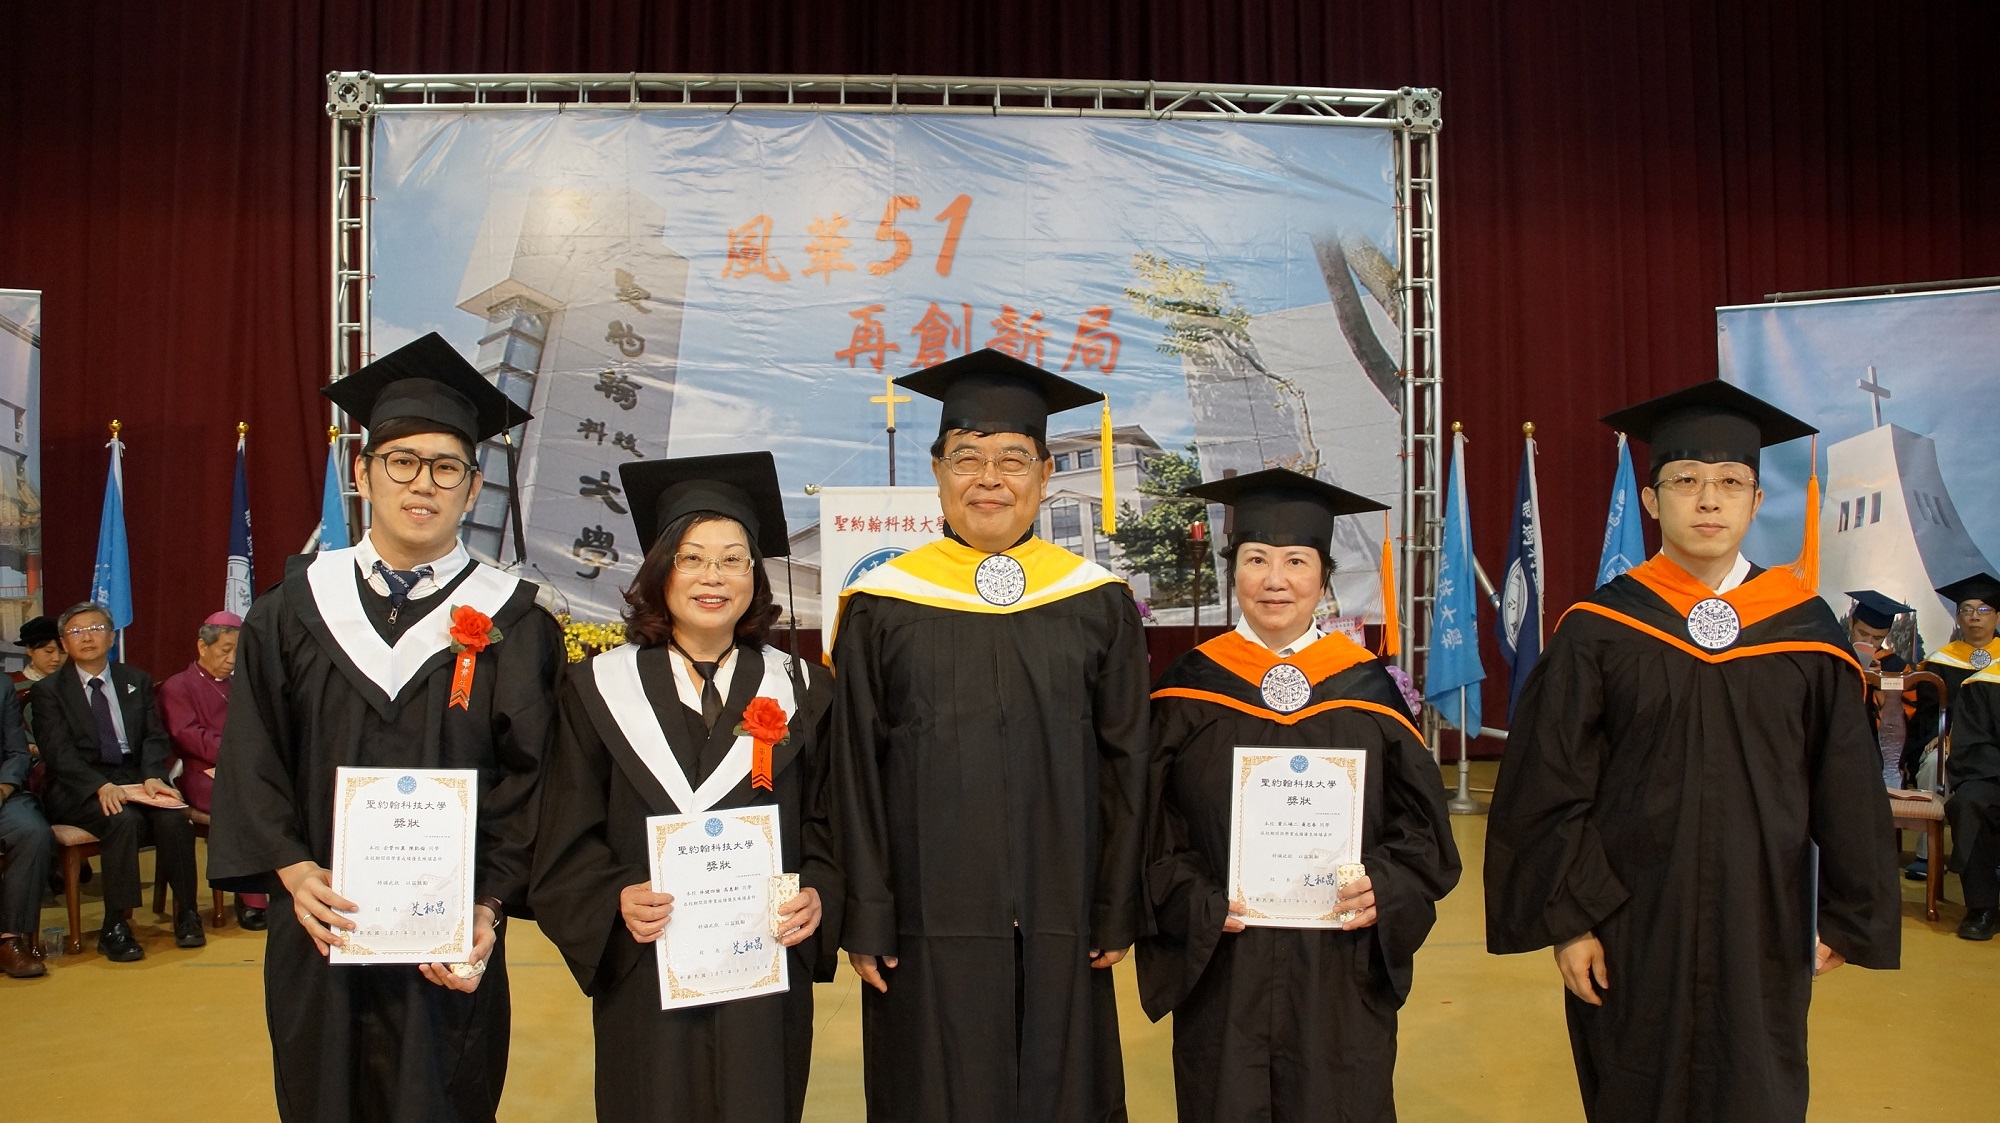 徐祥禎副校長（左三）頒發學業成績優良獎給獲獎同學